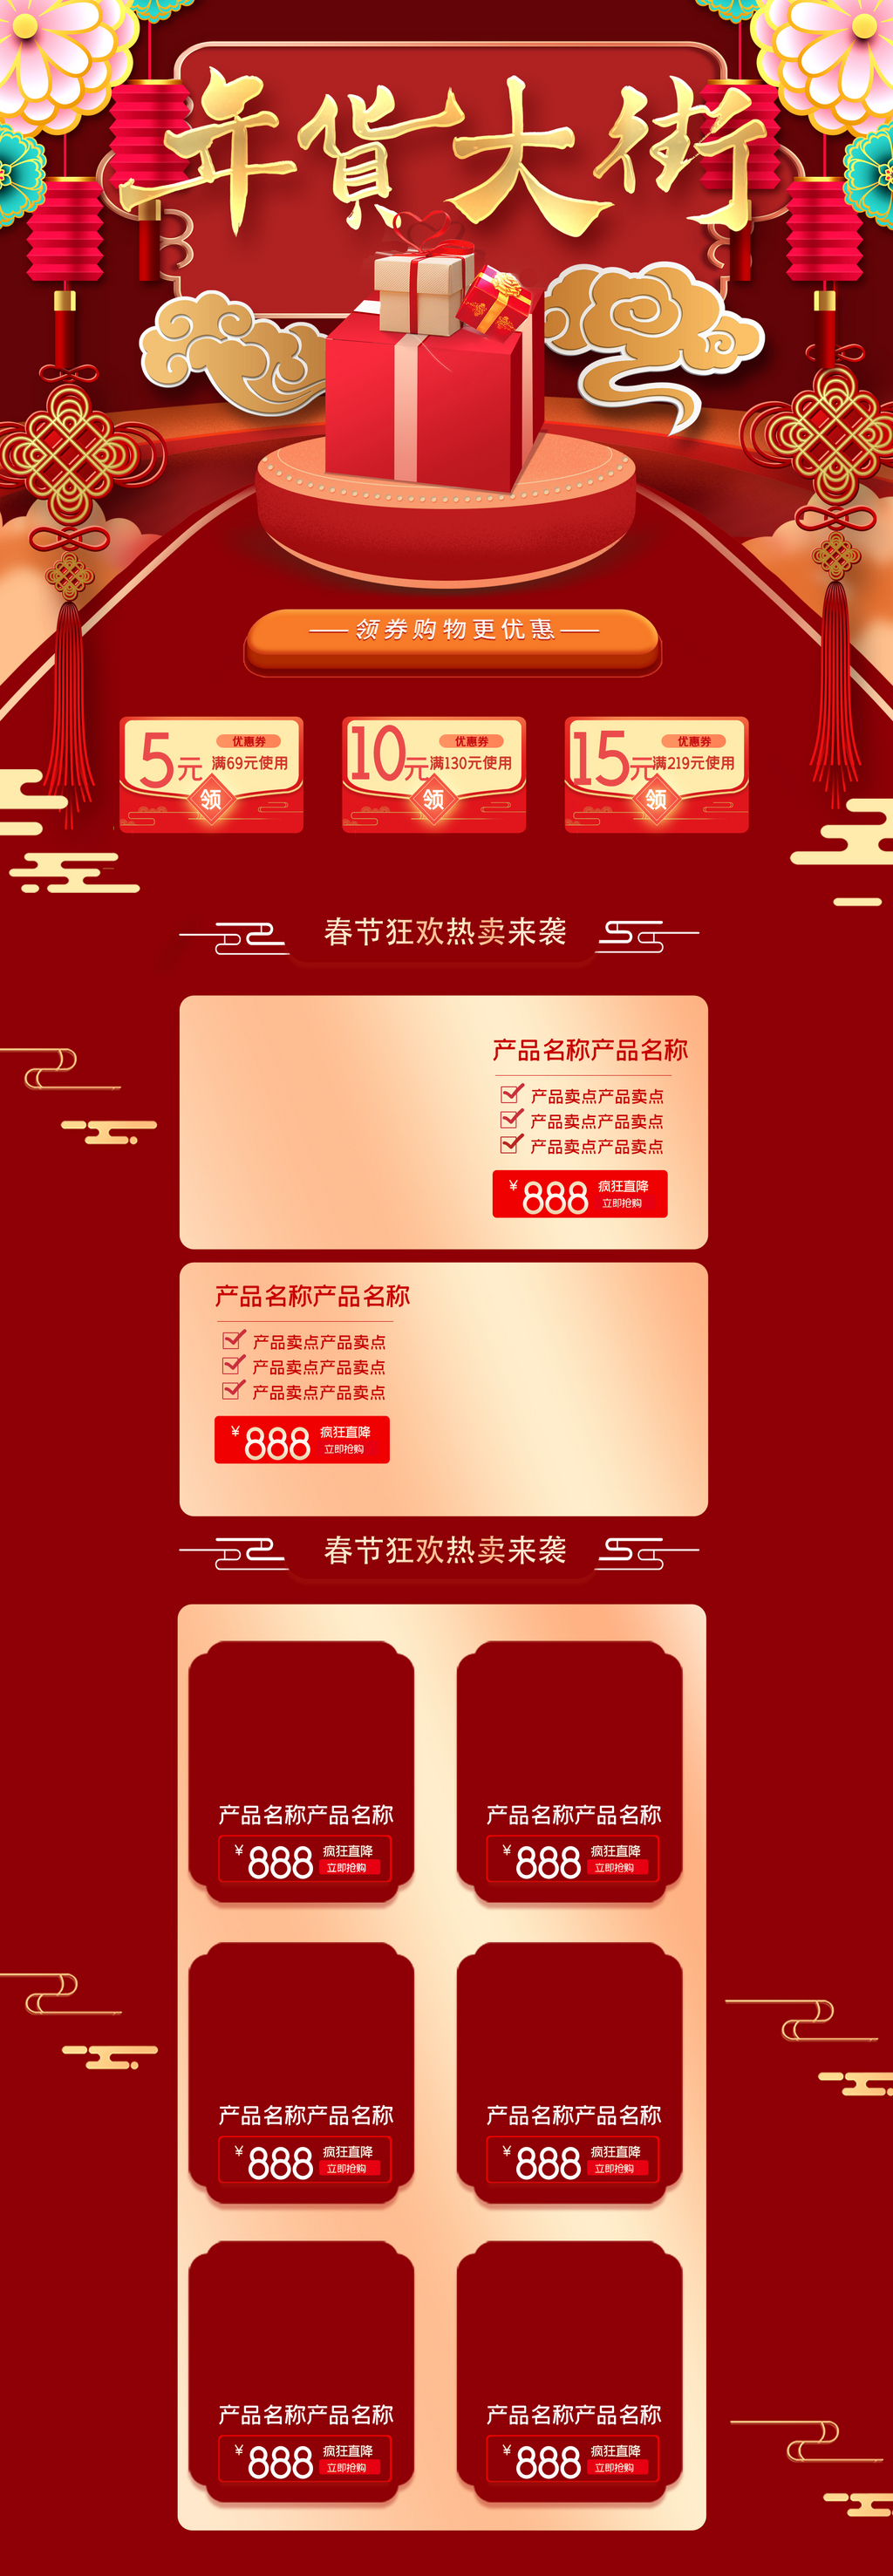 红色喜庆年货大街宣传首页